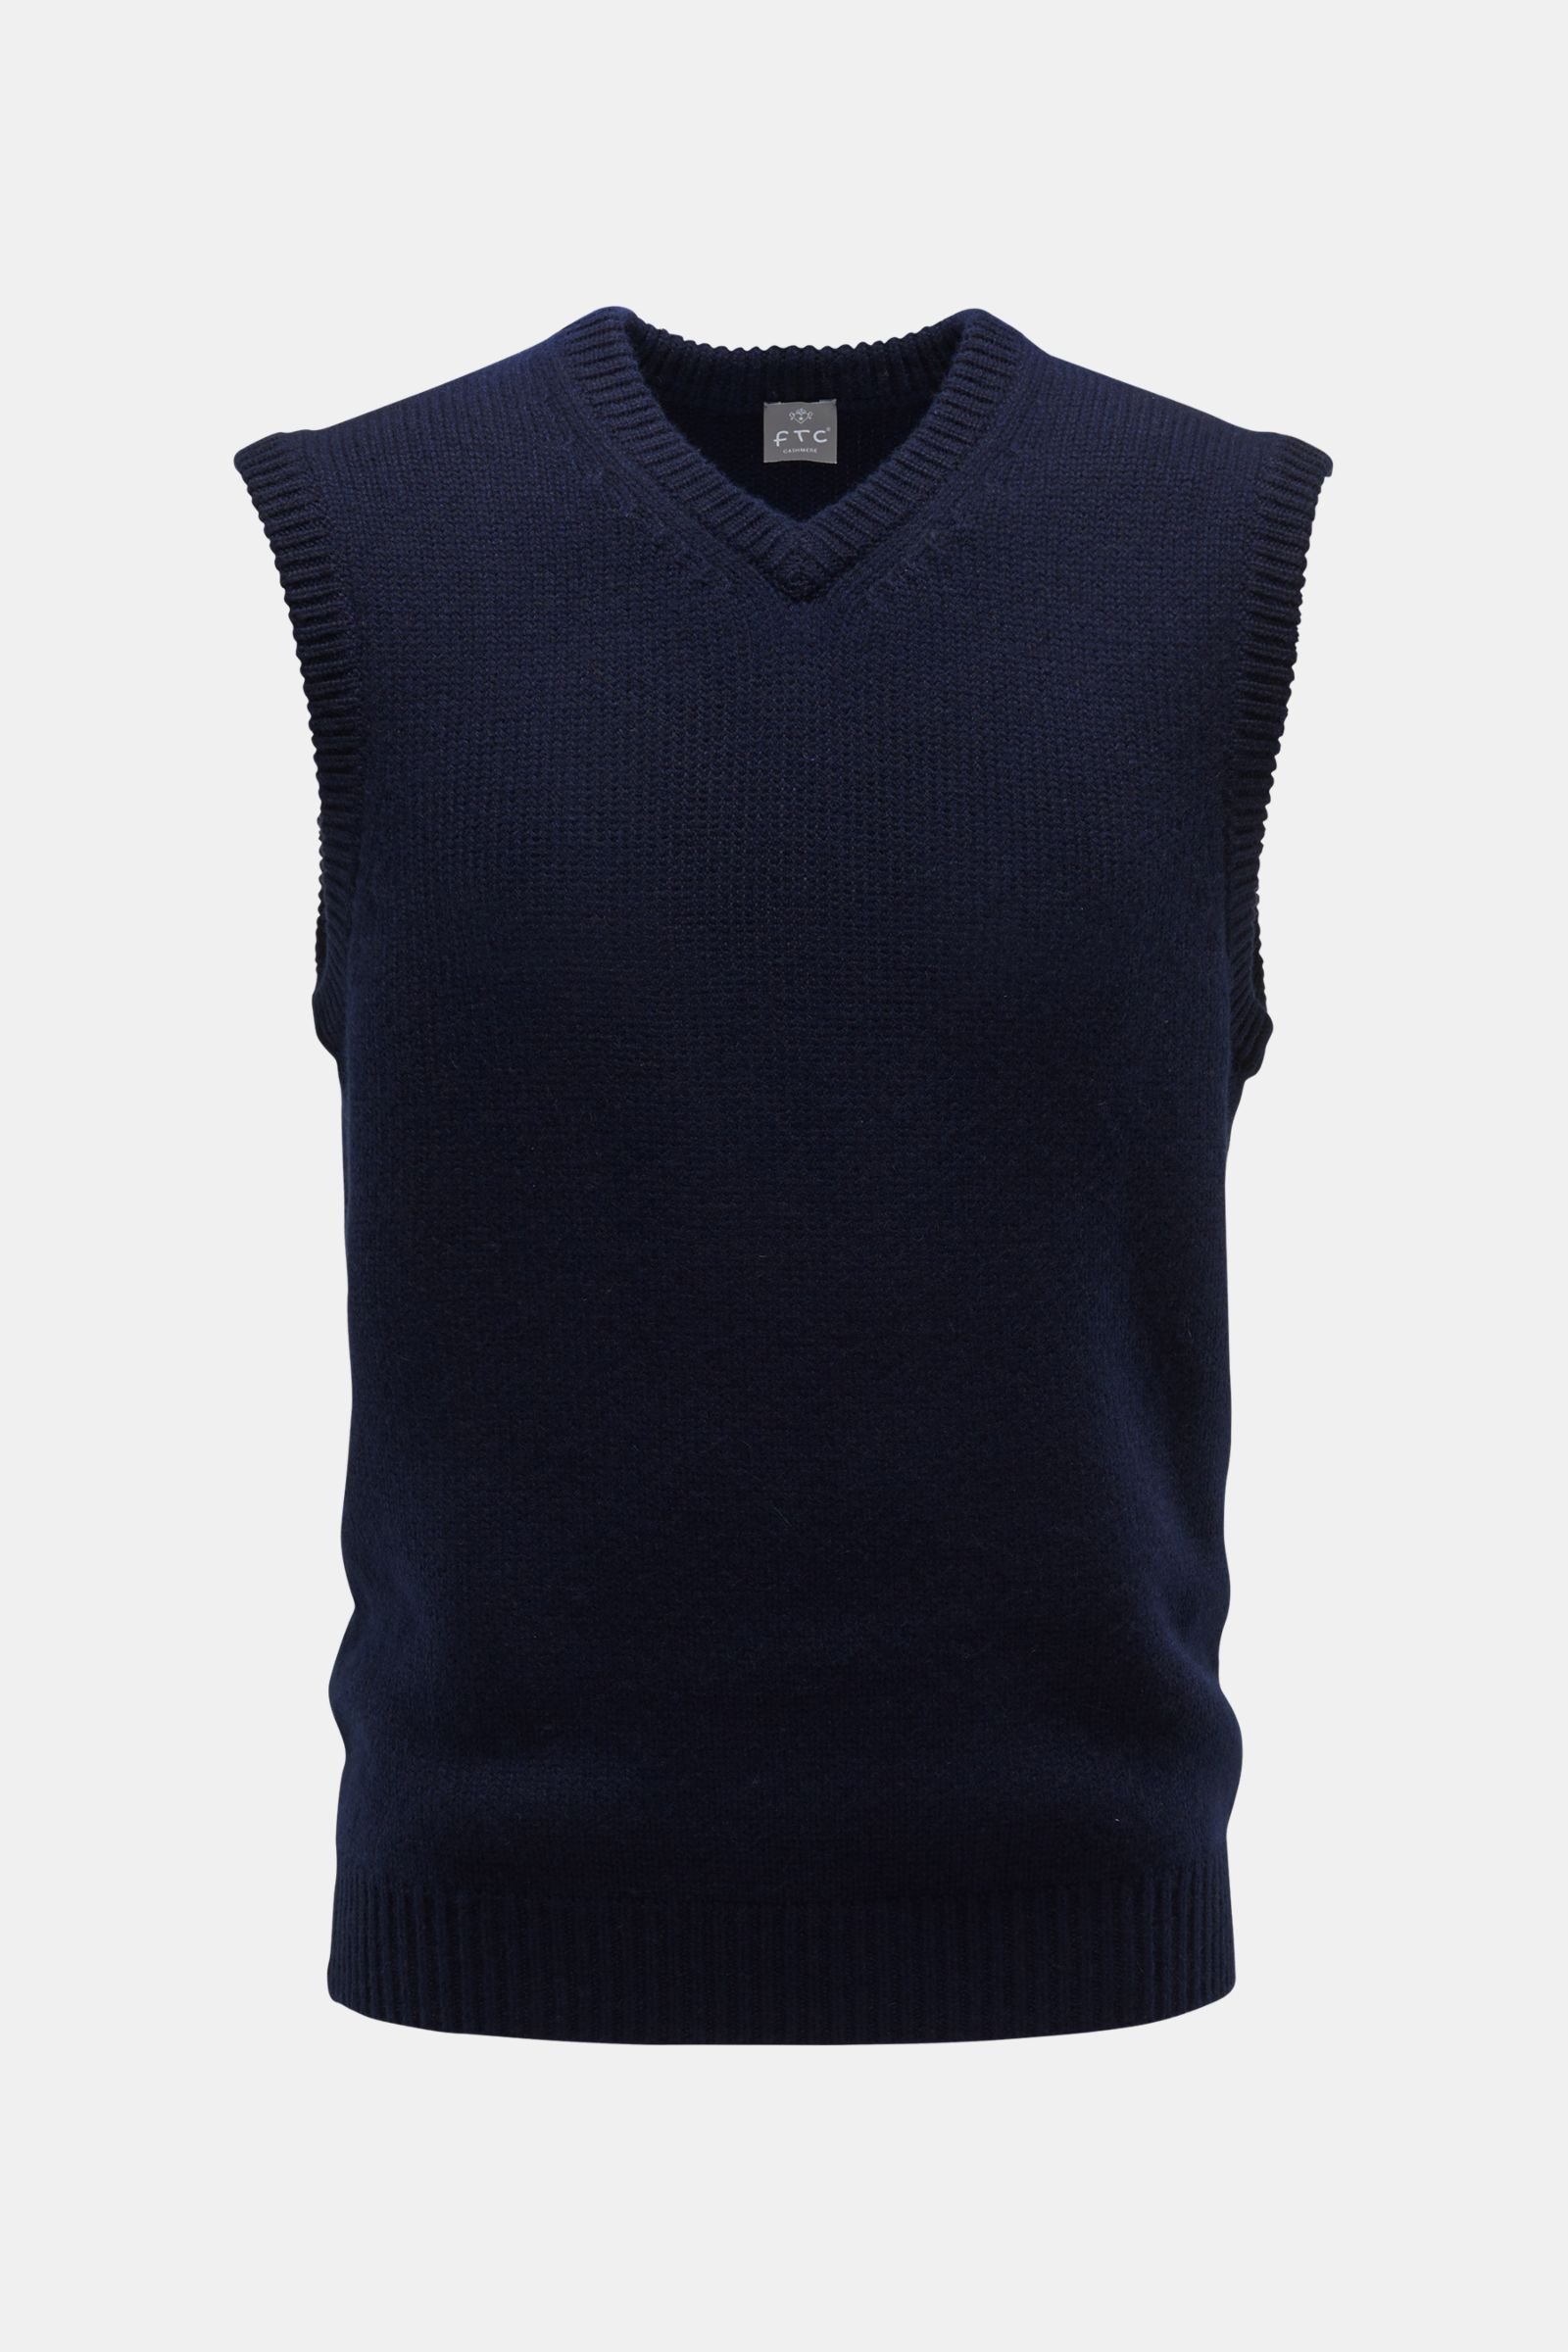 Cashmere v-neck sweater vest navy